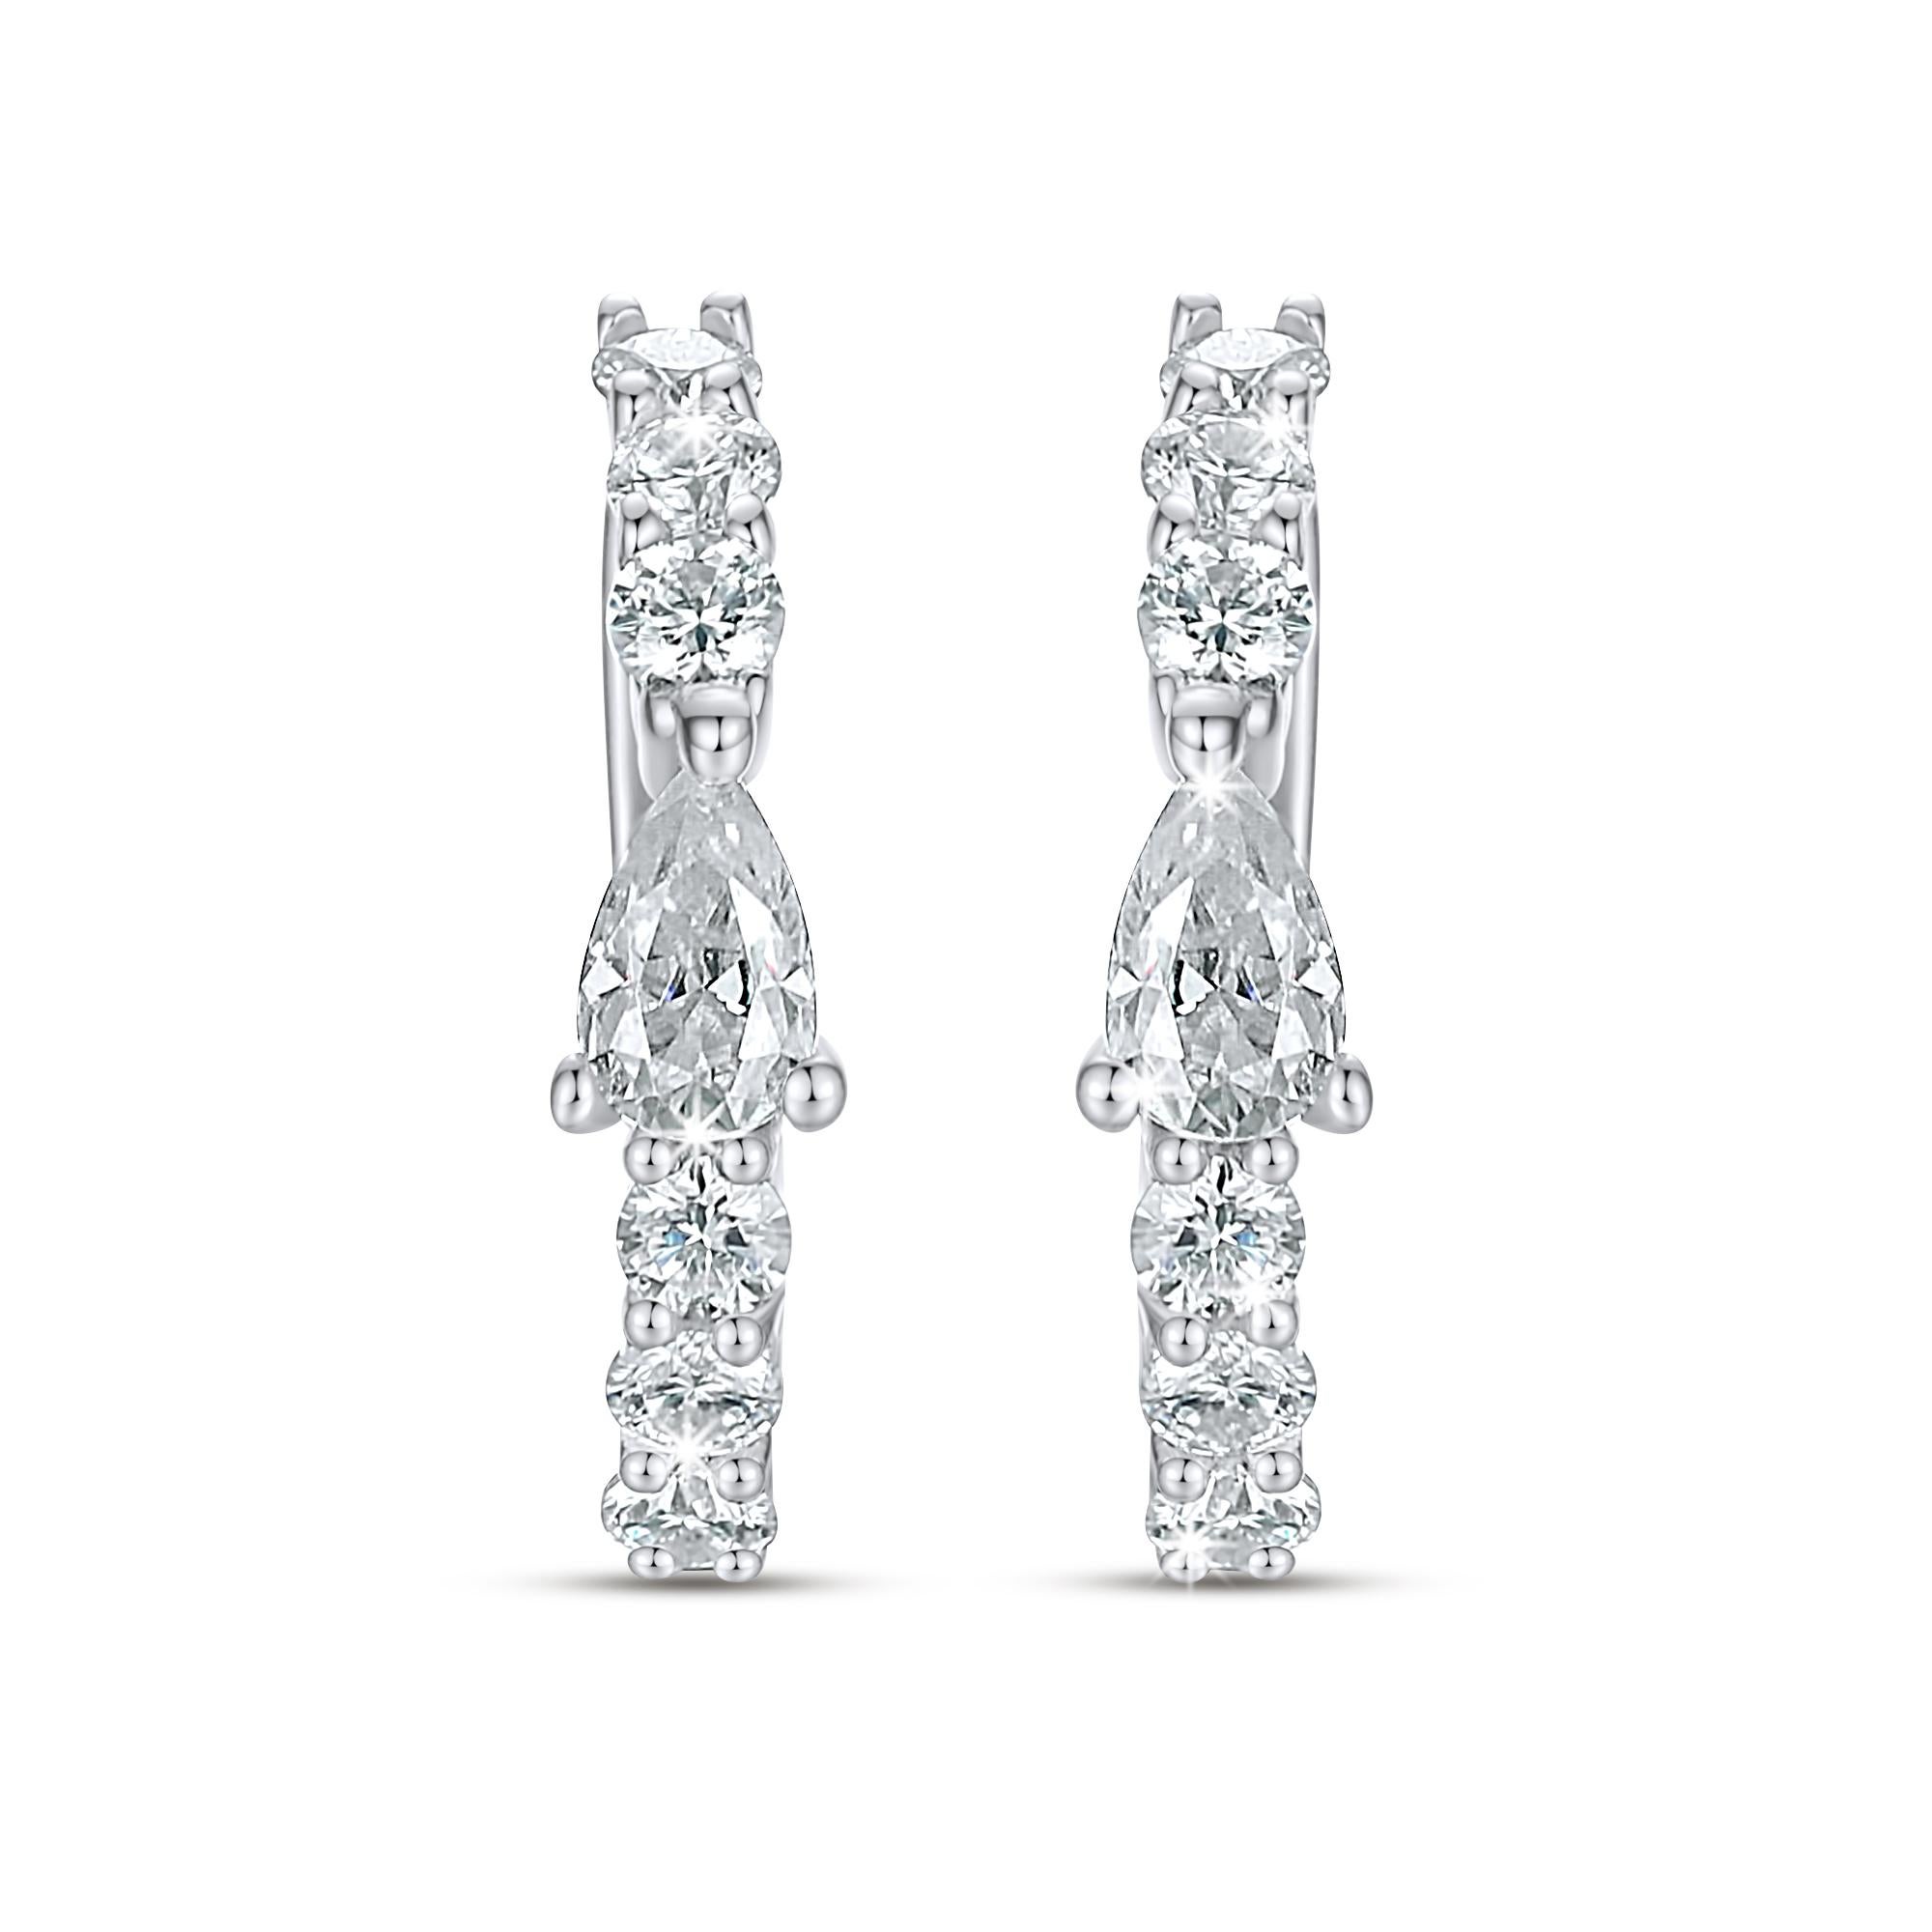 Die Romancing Huggie-Ohrringe sind ein echter Hingucker. Eine funkelnde Reihe natürlicher, kanalgefasster Diamanten wird von einem eleganten Cluster an der Schließe gekrönt. Zelebrieren Sie Ihre göttliche Weiblichkeit, indem Sie diese 14-karätigen